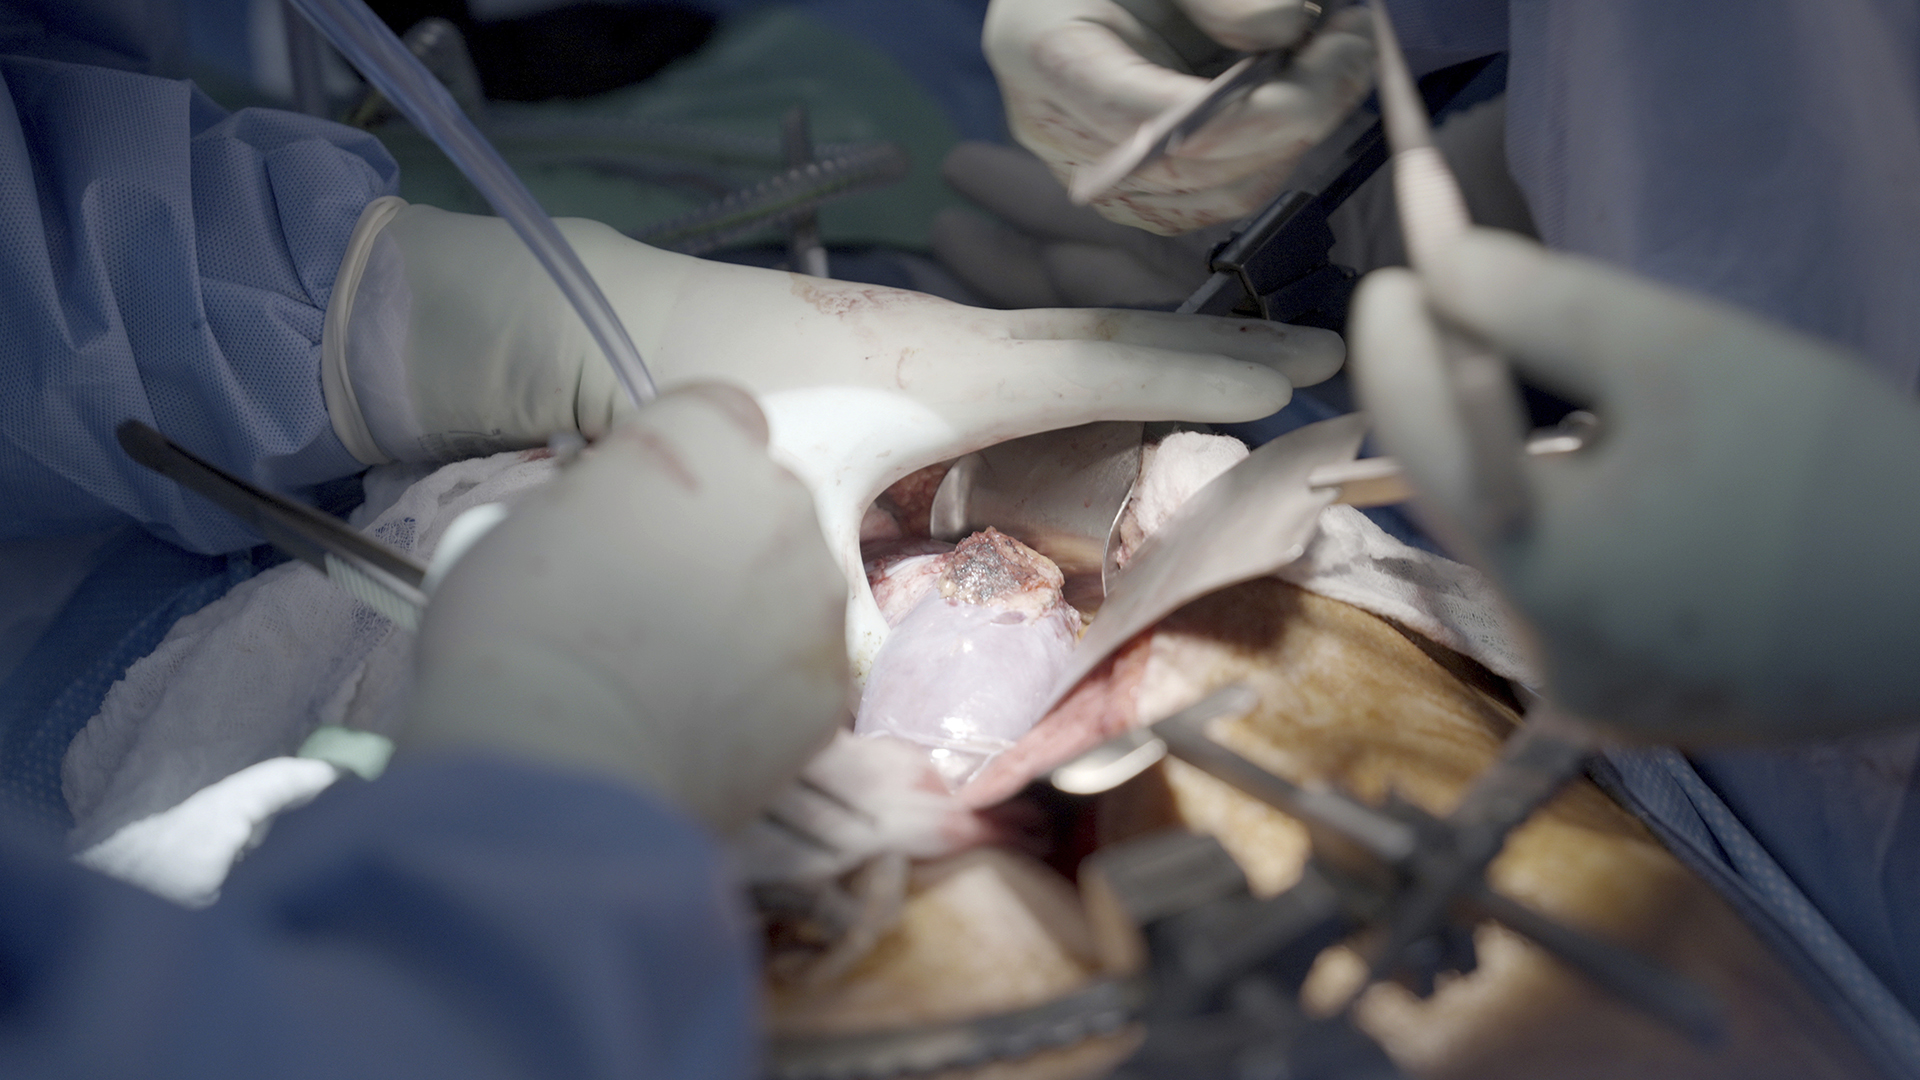 Un riñón de cerdo funciona durante dos meses en el cuerpo humano, lo que supone un récord